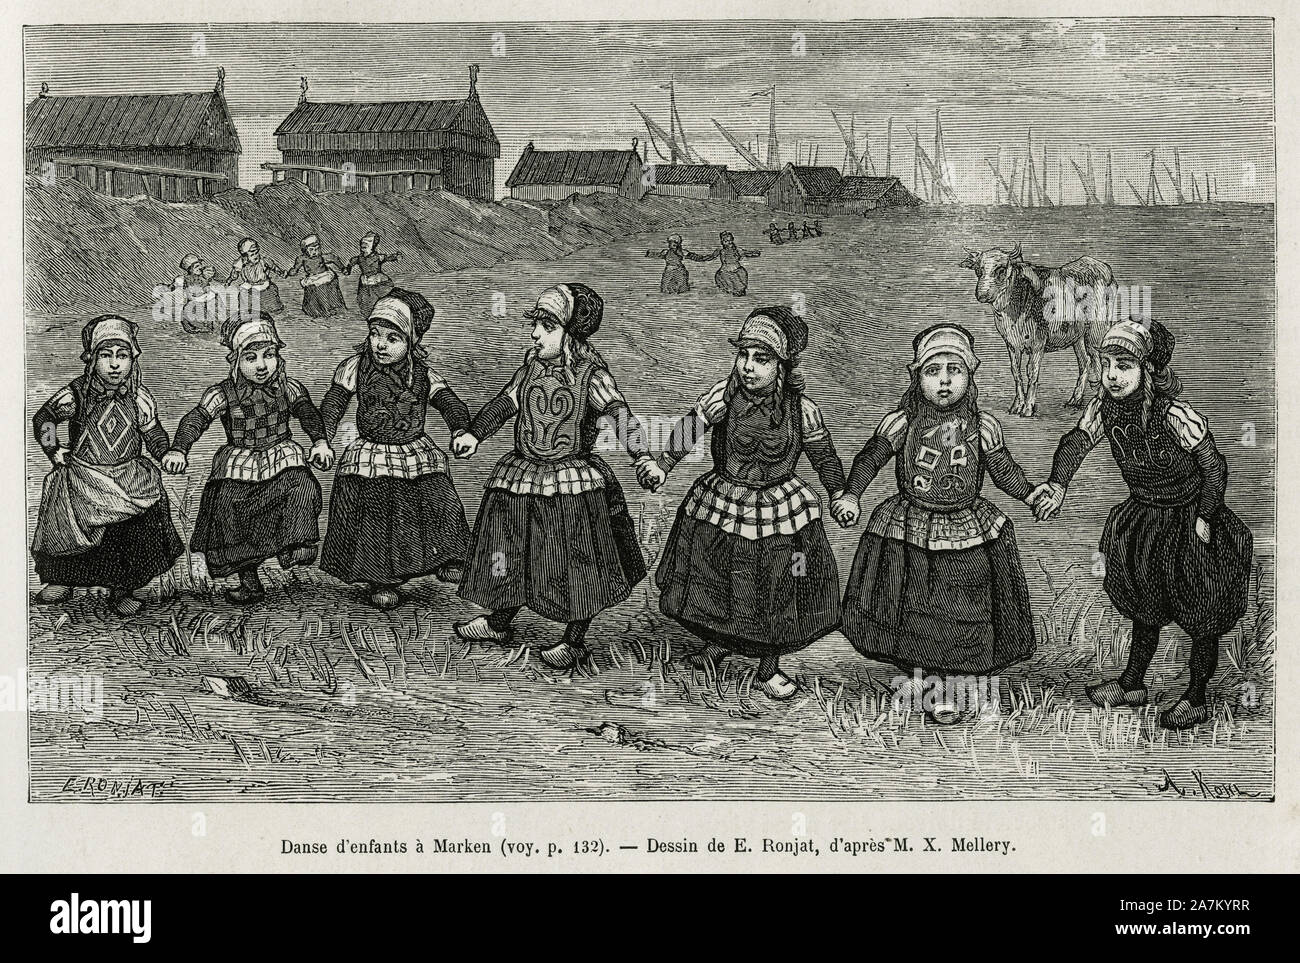 Danses d'enfants a Marken ( Pays Bas), gravure d'apres un dessin de E.Ronjat, pour illustrer le recit la Neerlande, par Charles de Coster, en 1878, pu Stock Photo